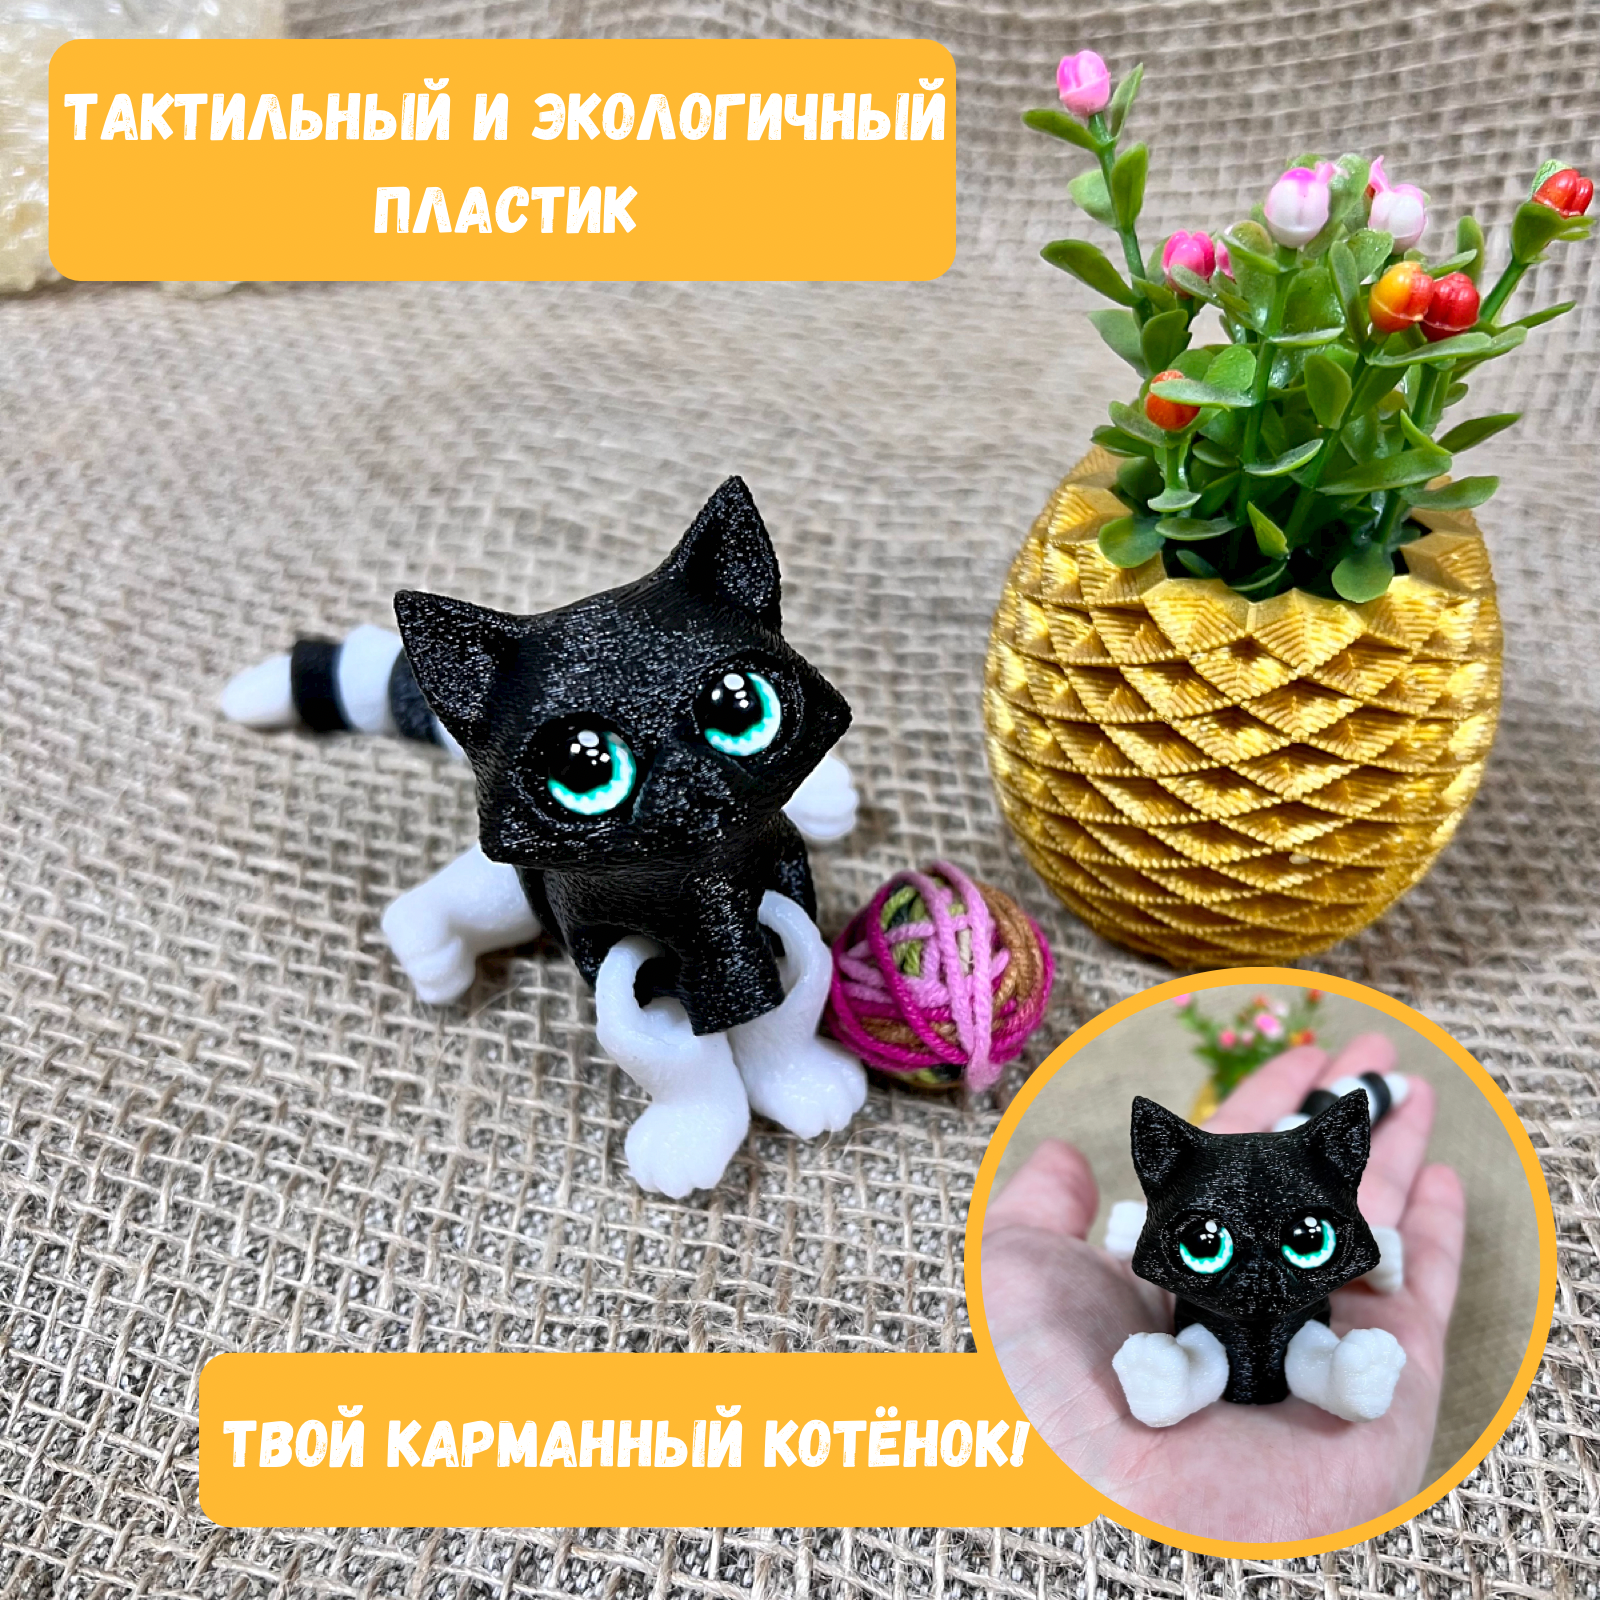 Котёнок - тактильная игрушка антистресс / подвижная игрушка / черный